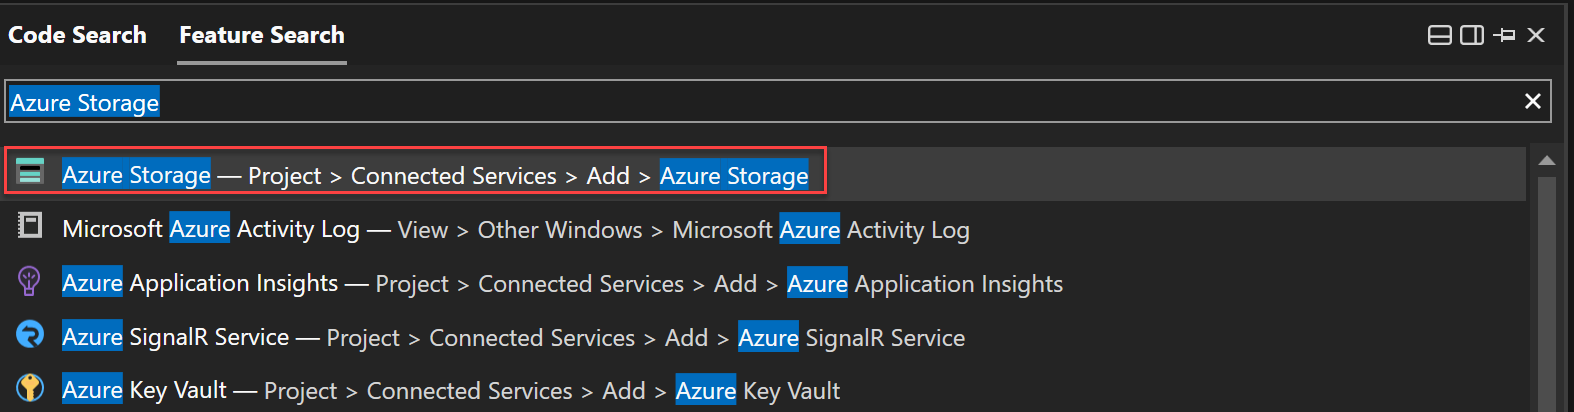 Cuplikan layar menggunakan Pencarian Fitur untuk mencari Azure Storage.